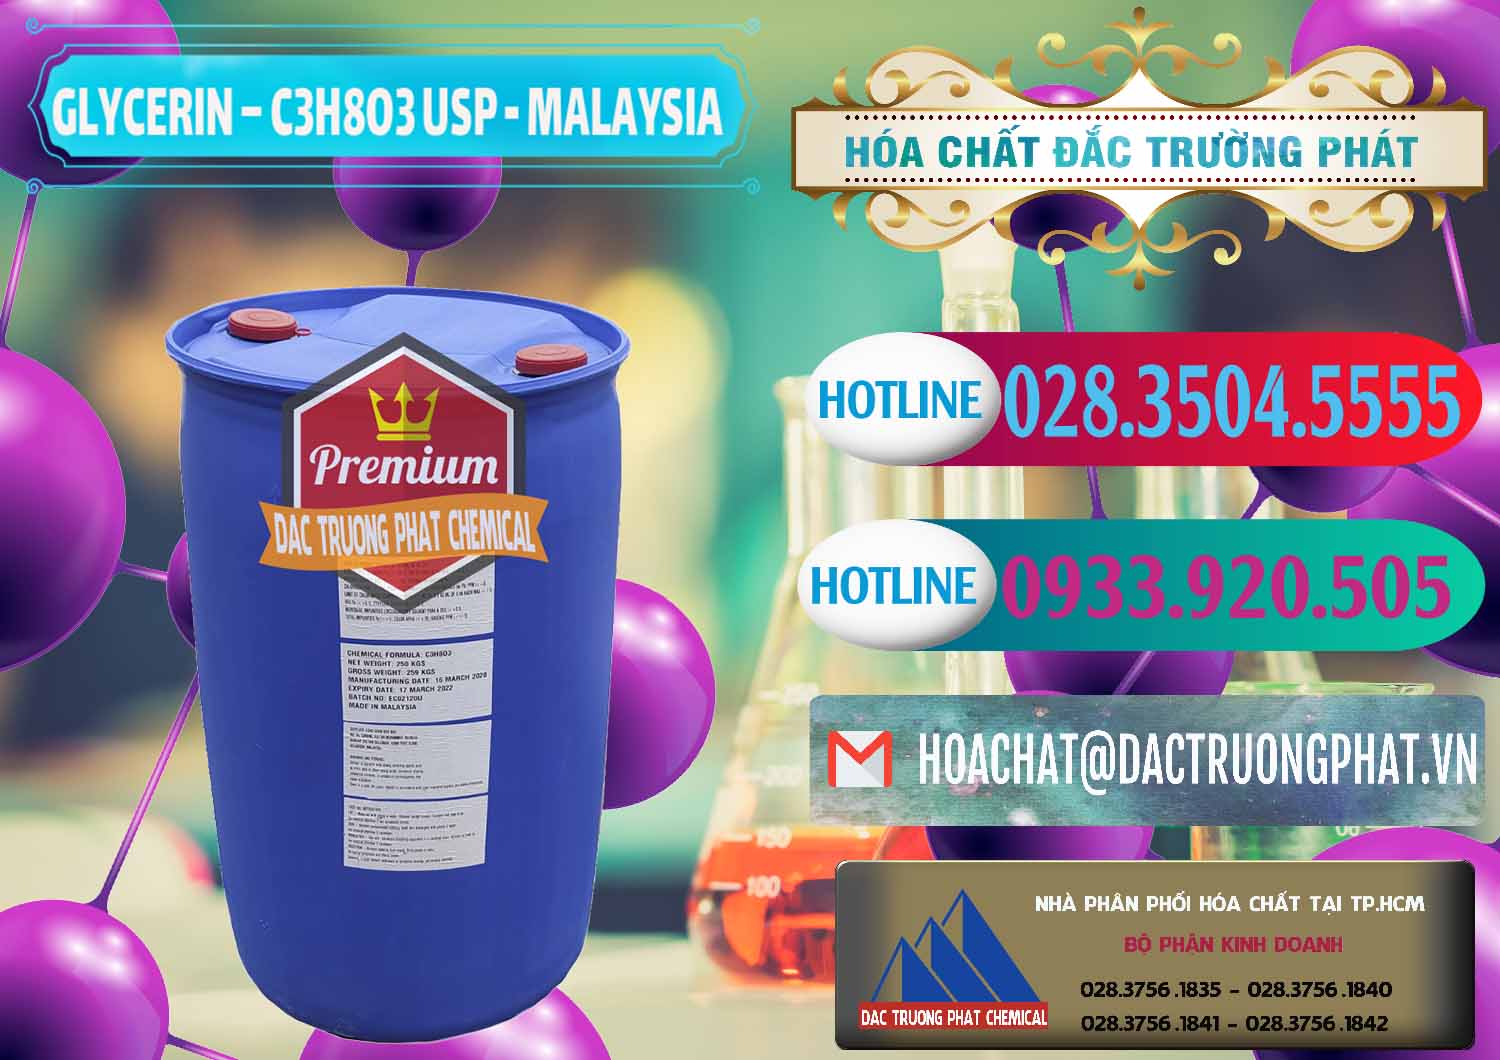 Đơn vị chuyên bán _ phân phối Glycerin – C3H8O3 USP Malaysia - 0233 - Đơn vị kinh doanh _ cung cấp hóa chất tại TP.HCM - truongphat.vn